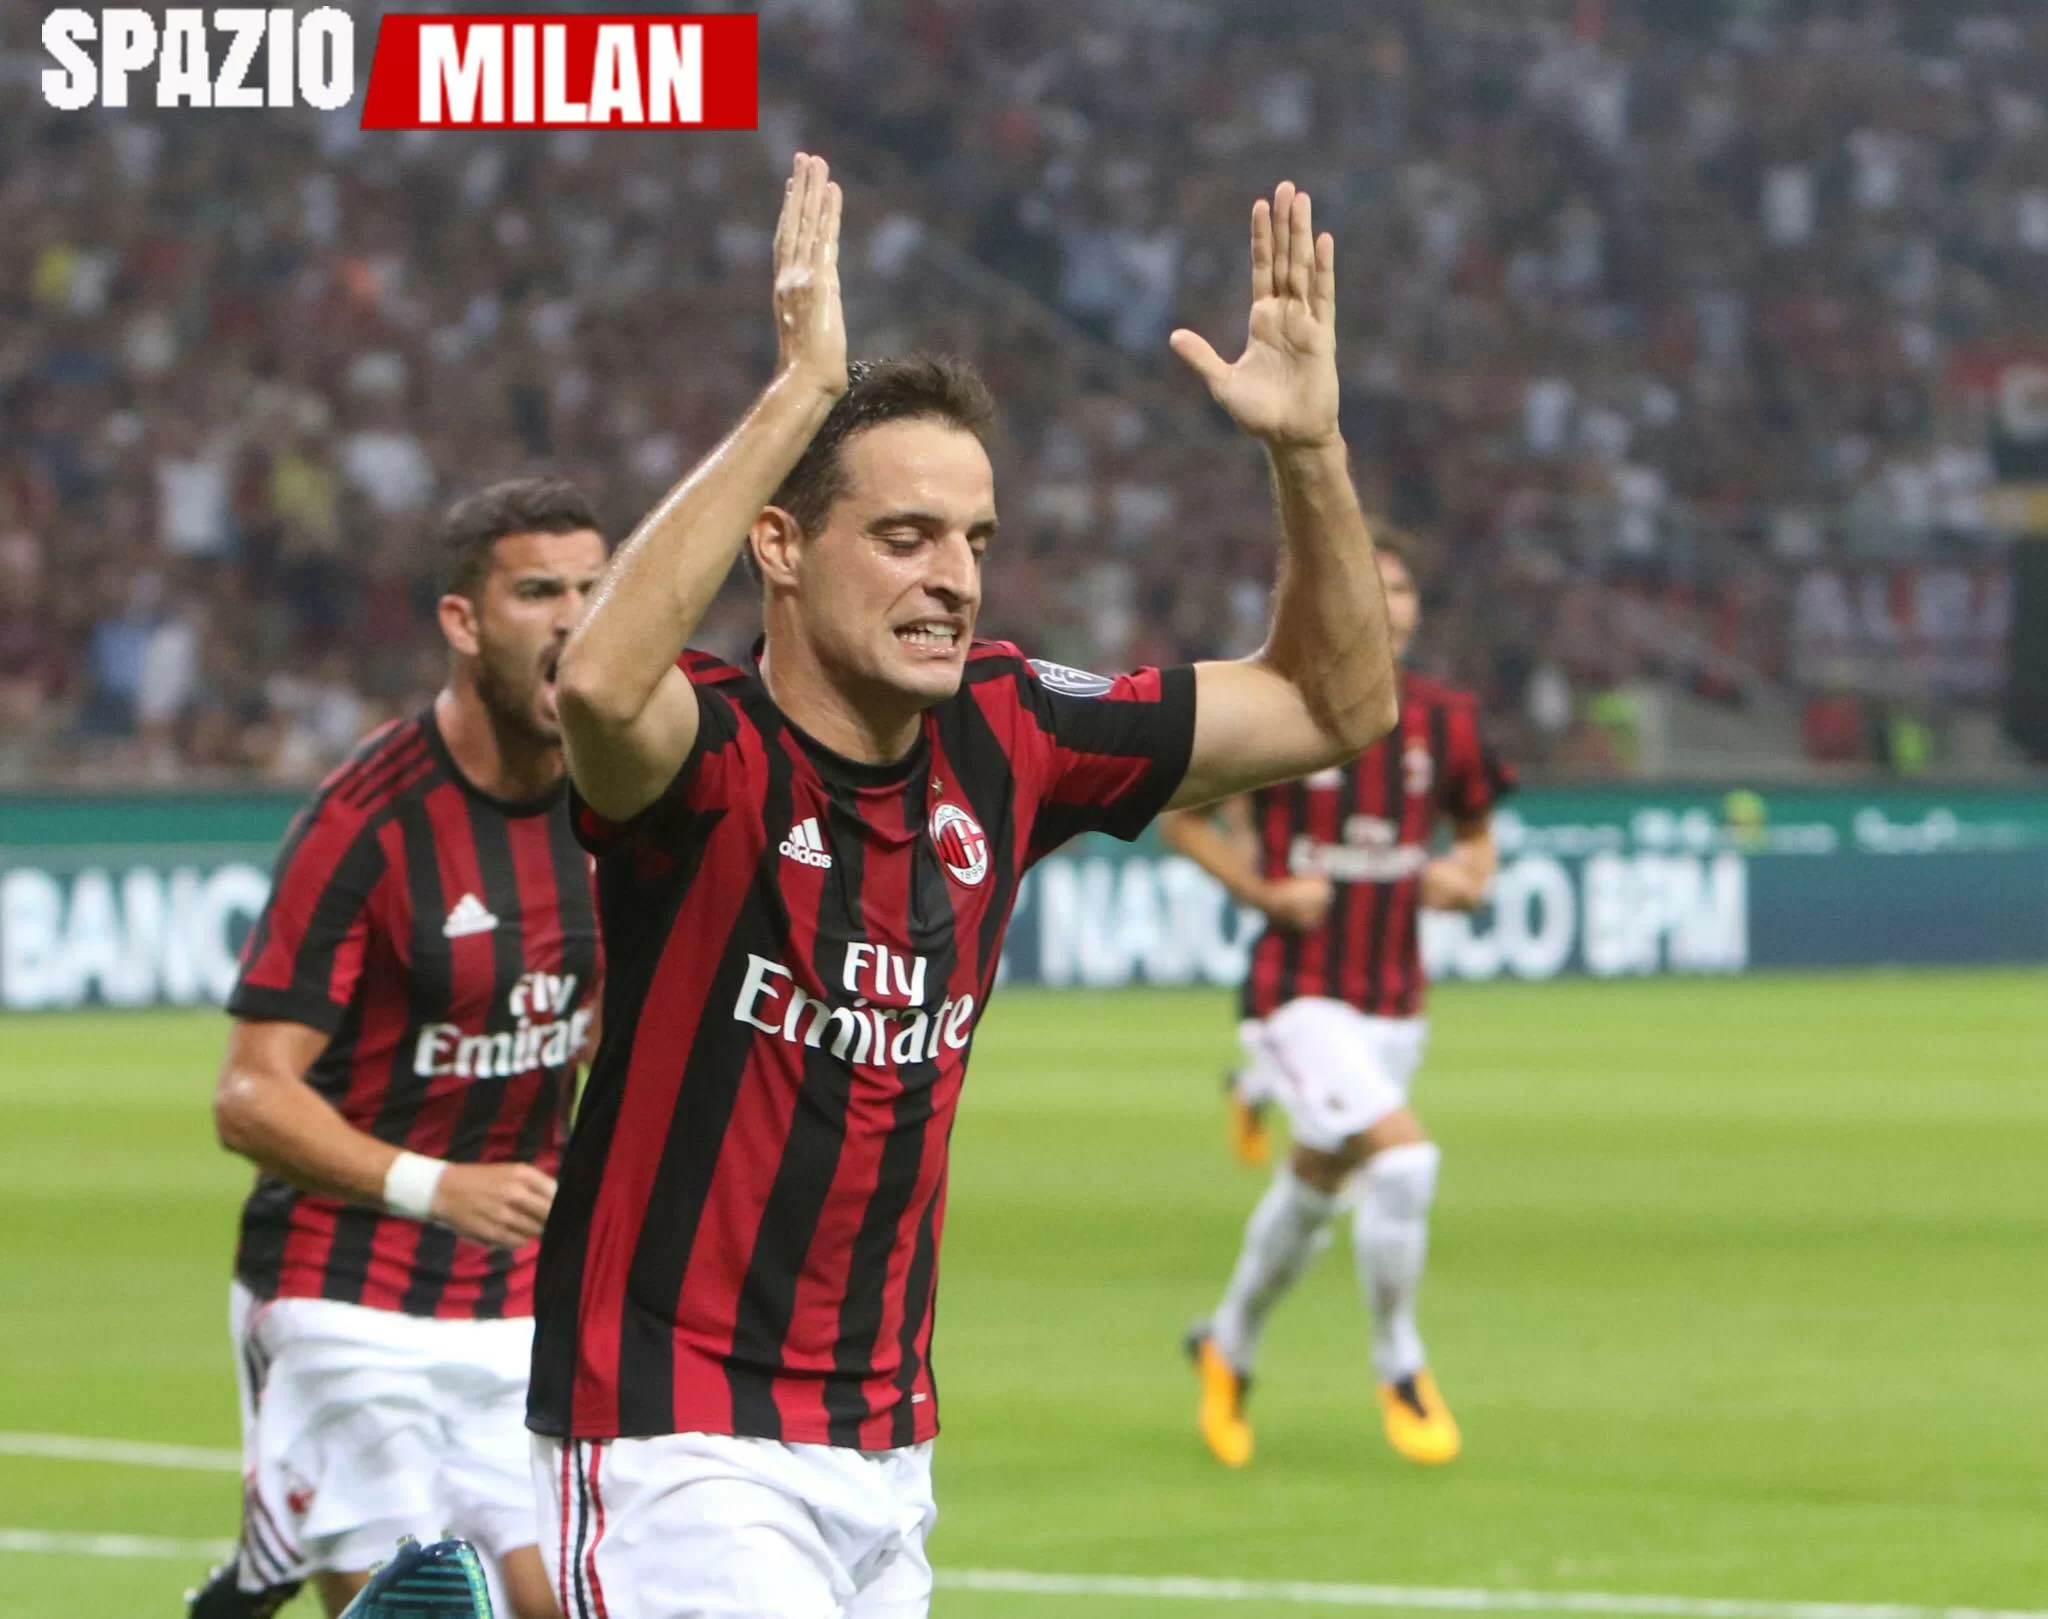 Milan-Bologna, la formazione ufficiale dei rossoneri: confermato il 4-3-3, Jack mezzala